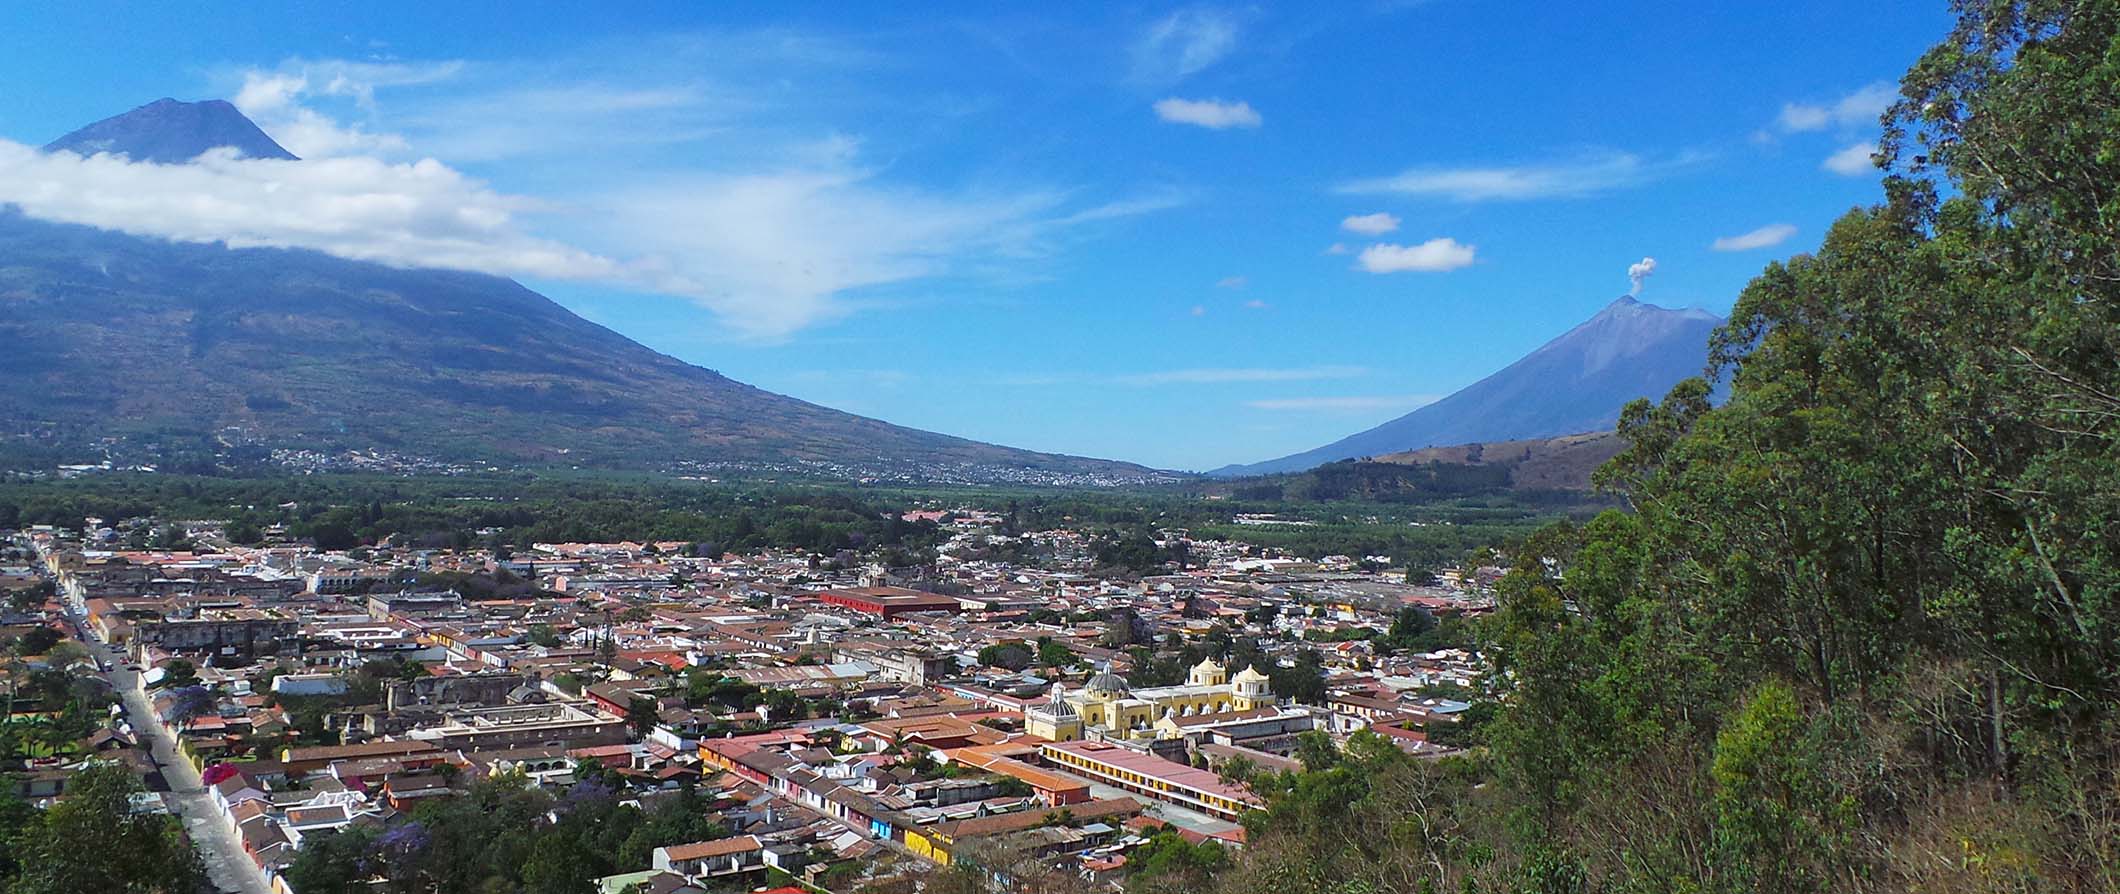 Vista de um vulcão na Guatemala com uma pequena cidade localizada num vale entre as montanhas